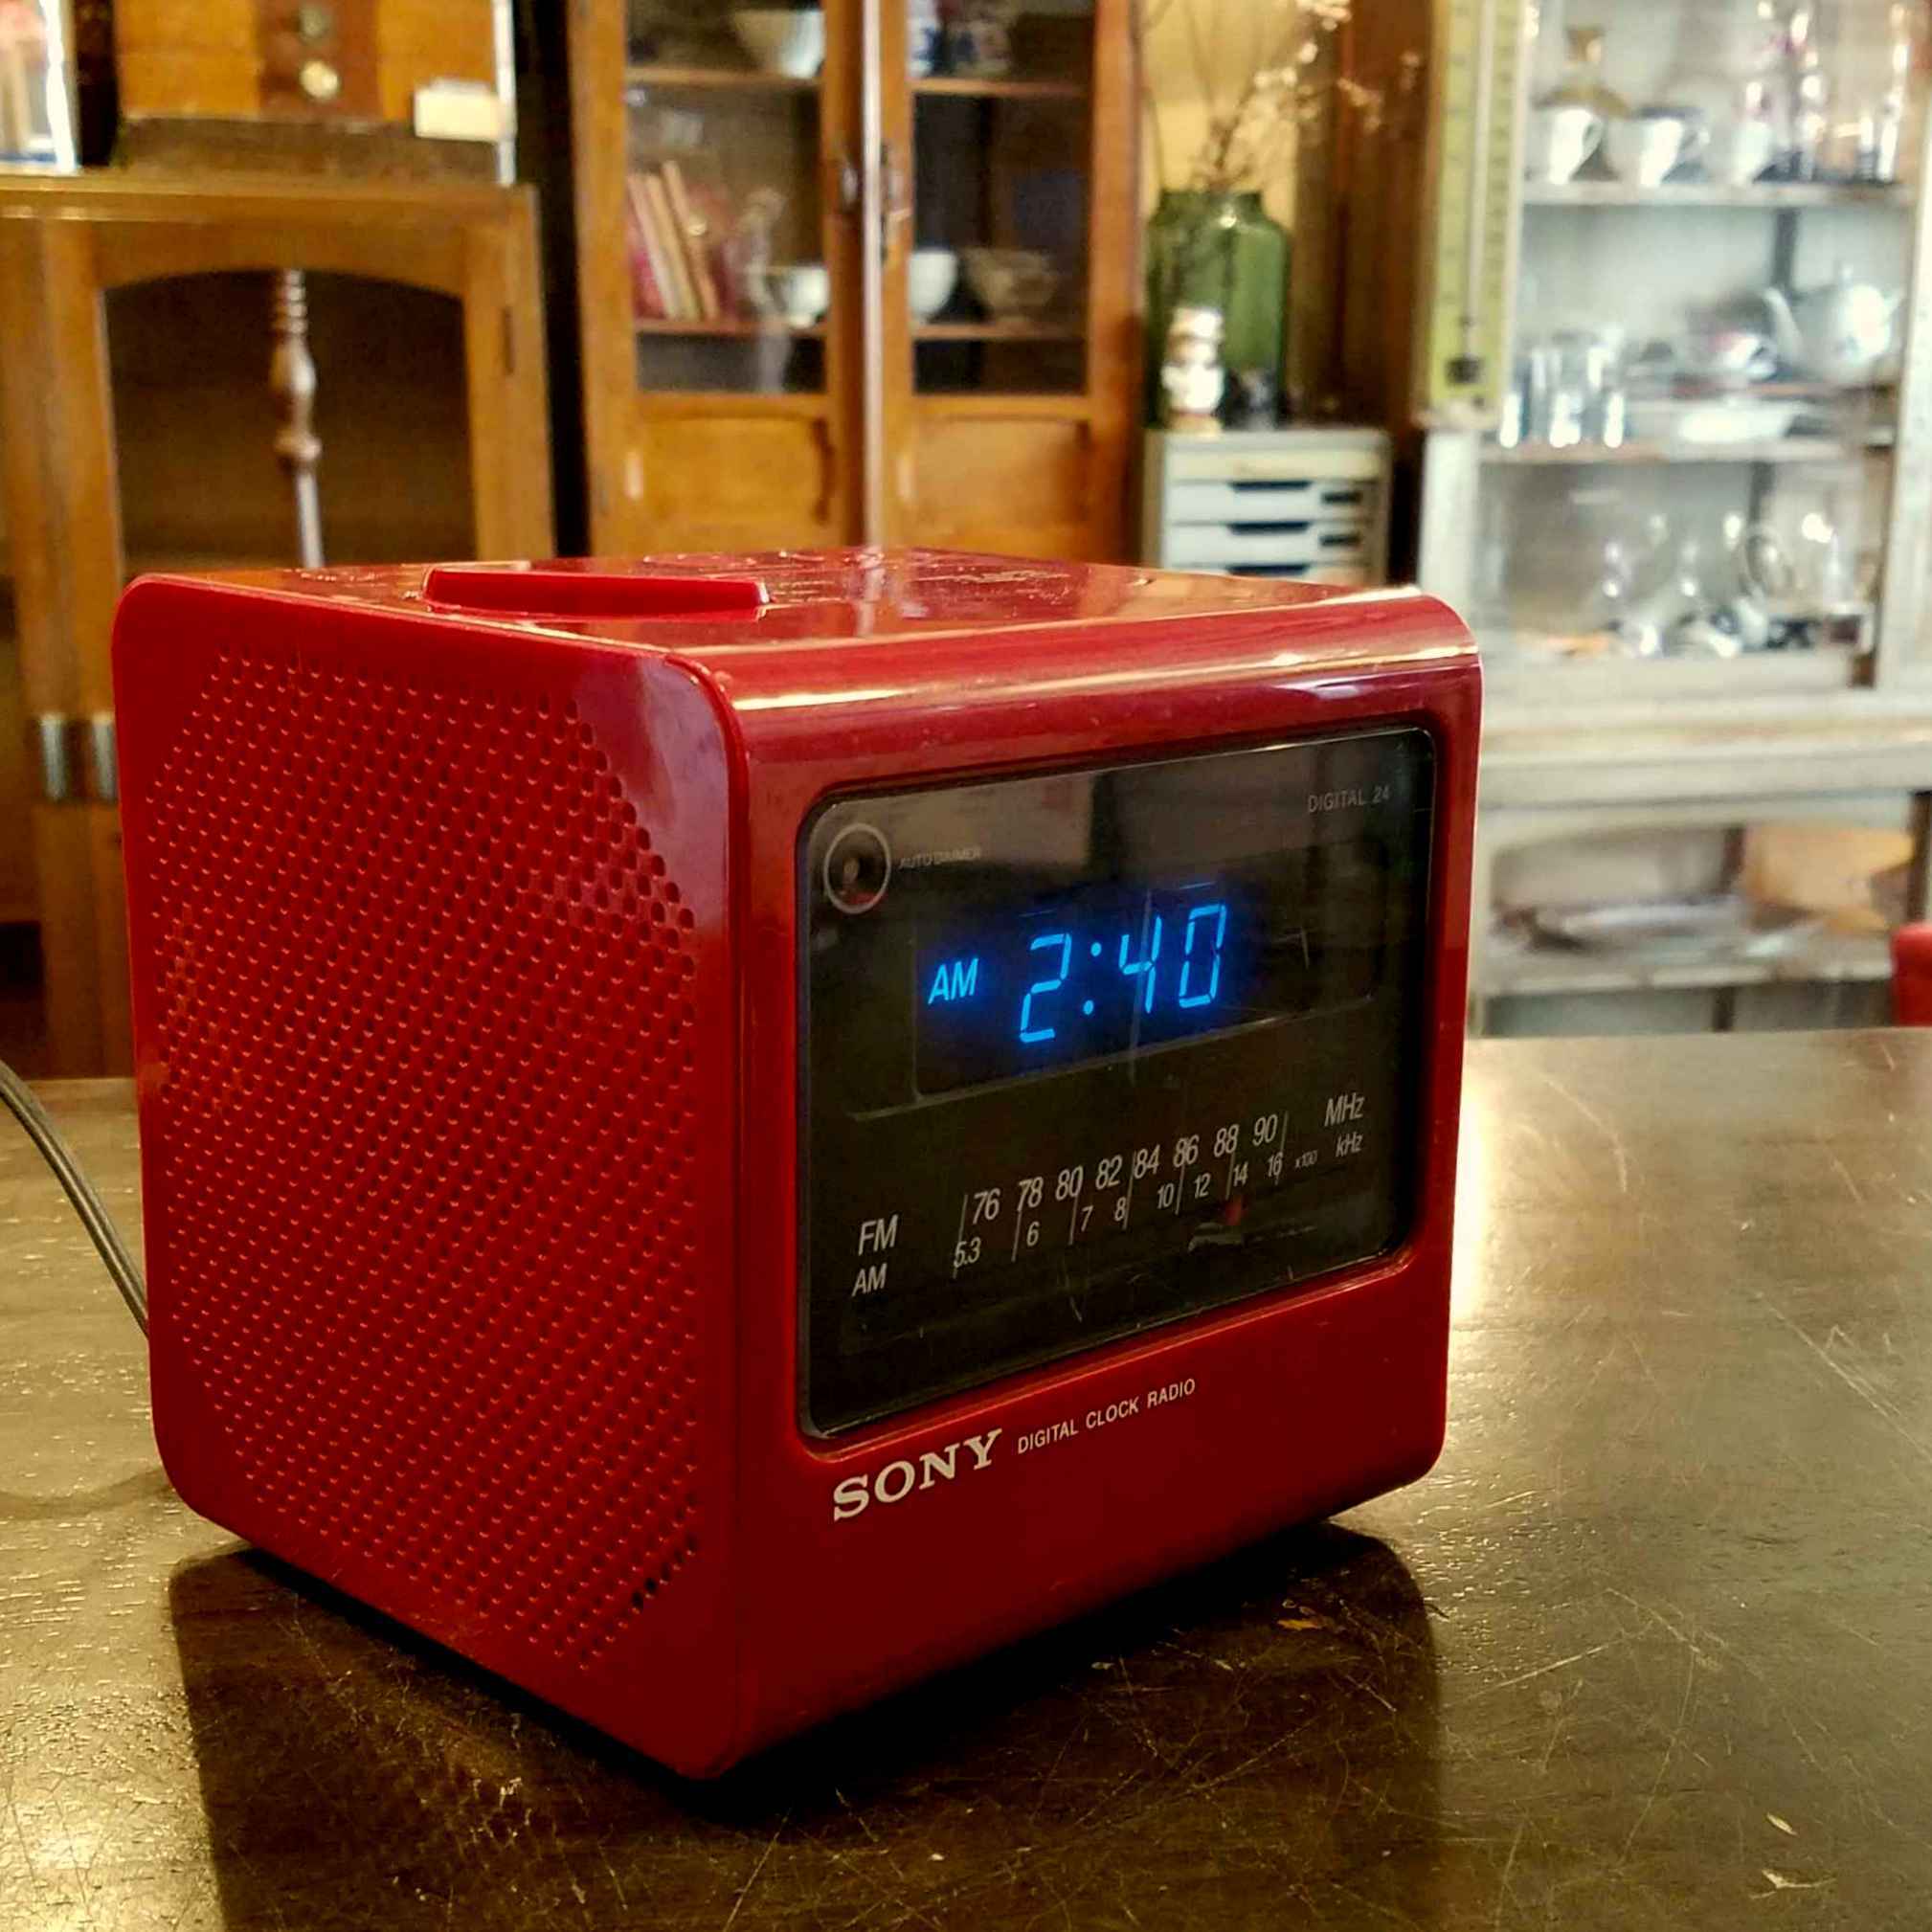 スペースエイジなソニー(SONY) デジタルクロック・ラジオ - [Sold Out]過去の販売商品